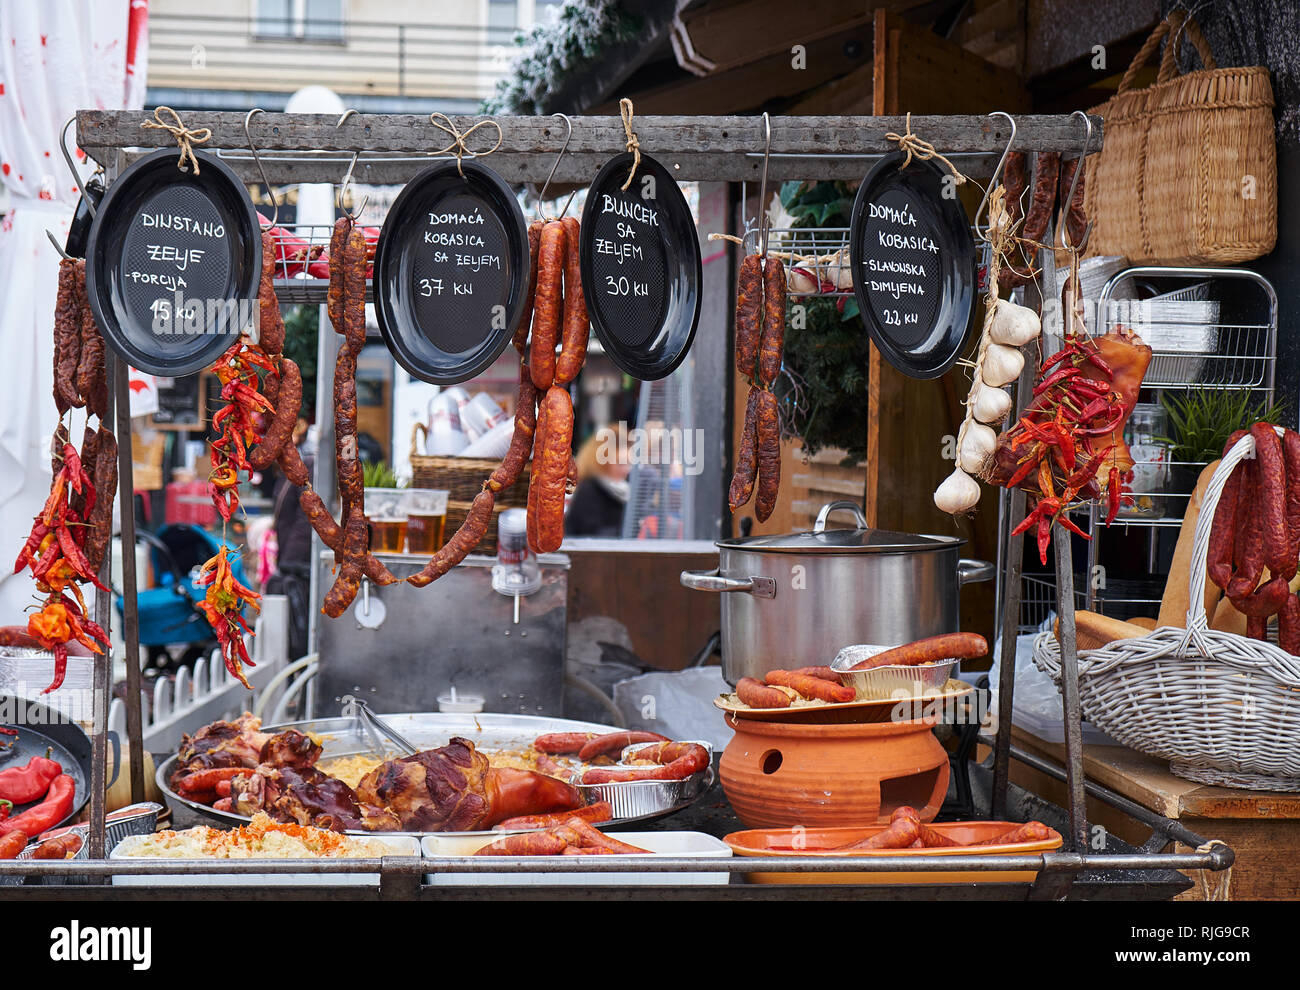 Cucina tradizionale croata display a Zagabria il mercatino di Natale. La salsiccia (Kobasica) e la carne di maiale hock (Buncek) sono i punti salienti Foto Stock